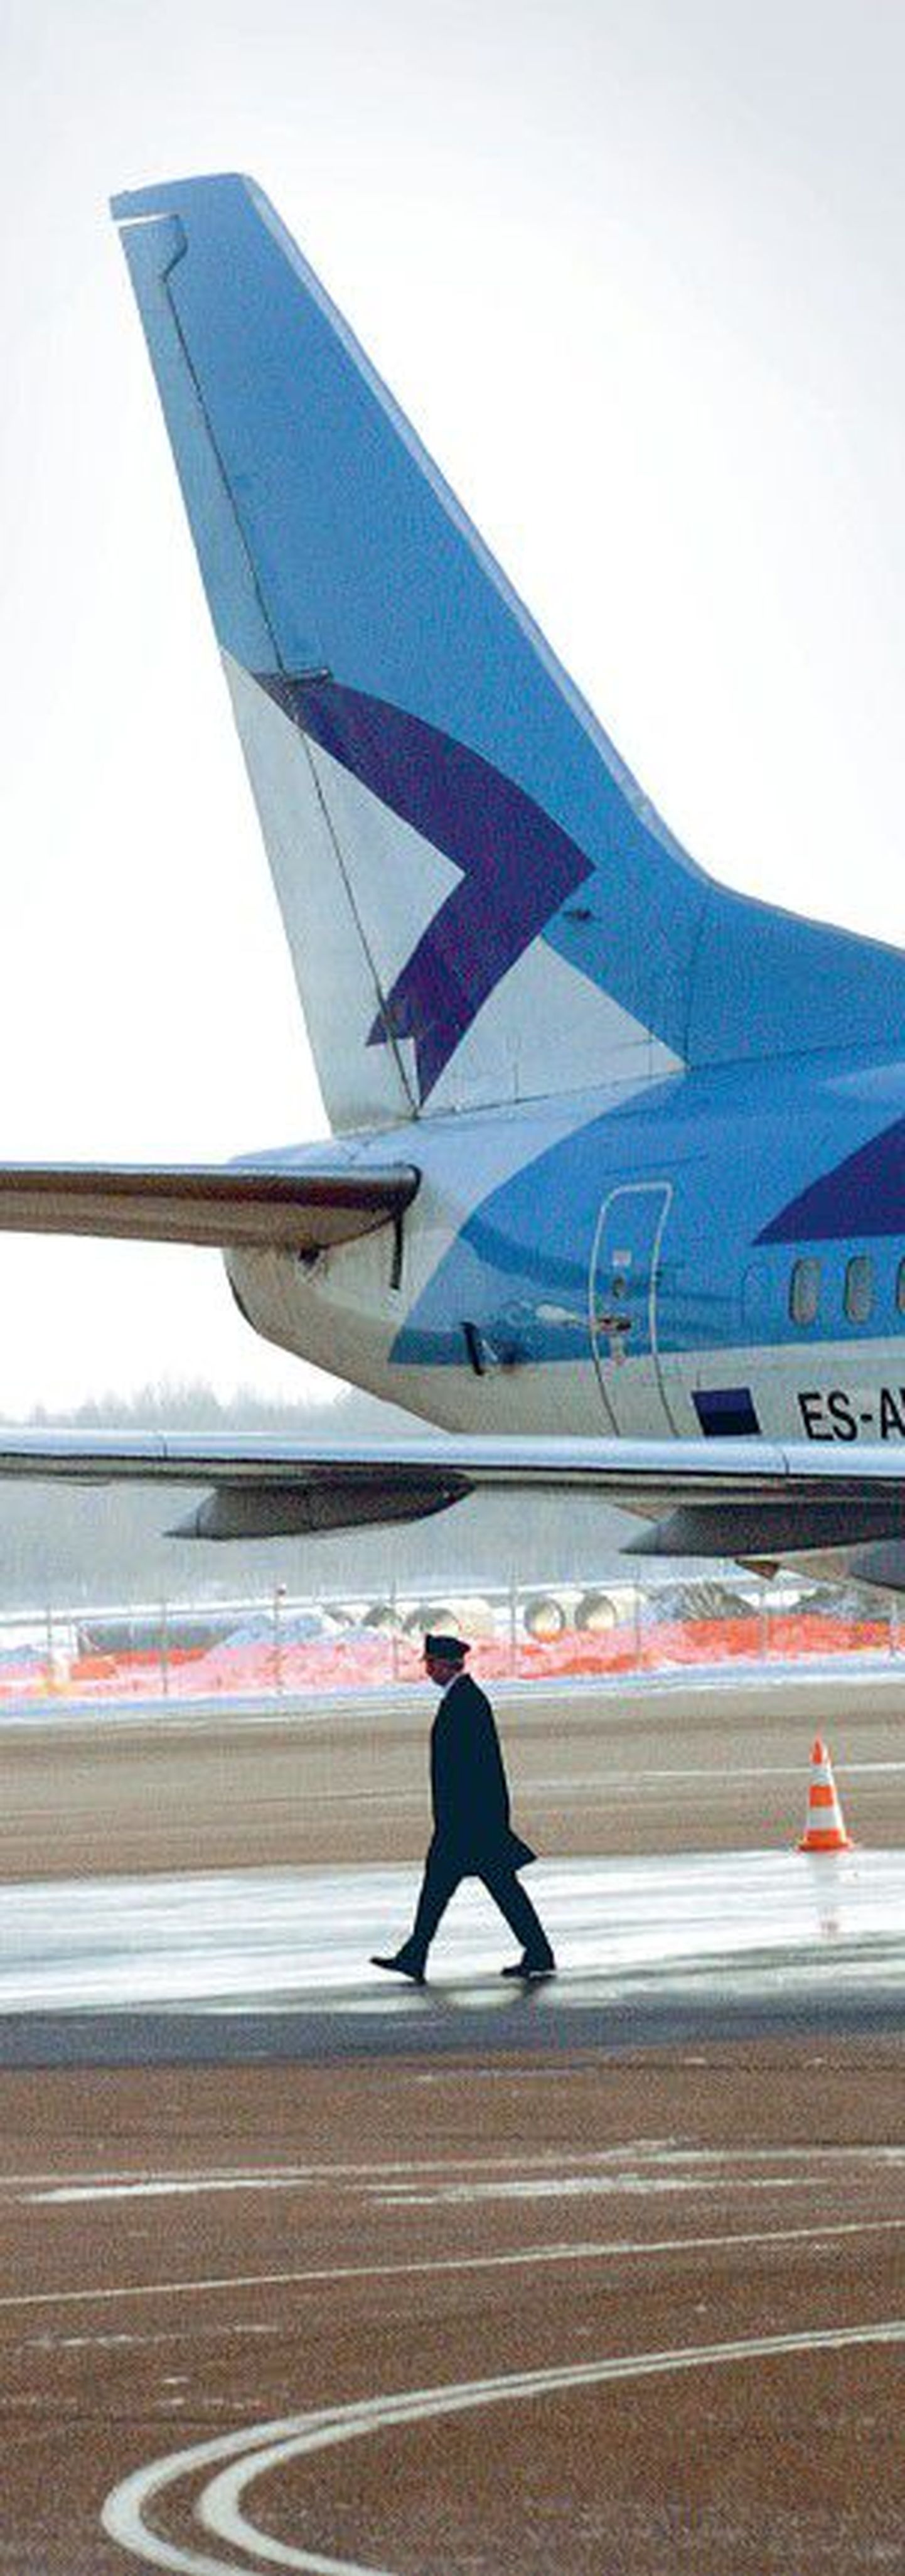 Estonian Air lubas kevadel, et hakkab järgmisel aastal soetama uusi lennukeid. Rahanappus ei luba seda plaani aga ellu viia ja ilmselt tuleb töötajaidki koondada.